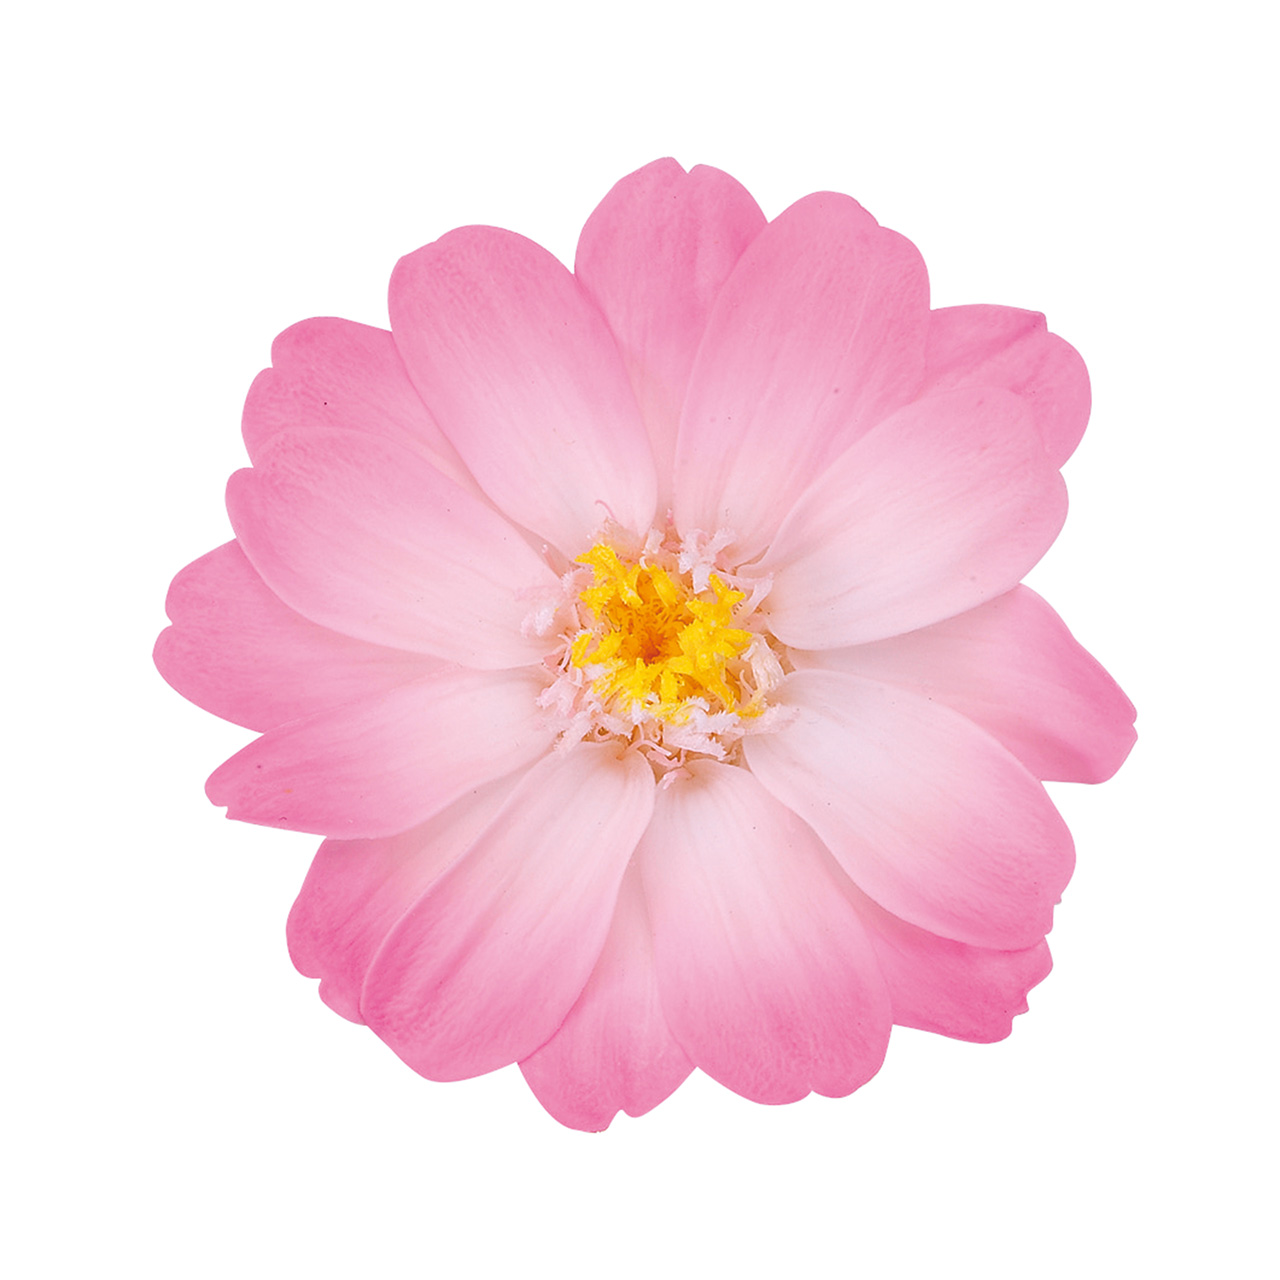 マイフラ】 通販/大地農園 ジニア・小・グラデーション ホワイトピンク プリザーブドフラワー 12輪入 DO003464-100(ホワイトピンク):  プリザーブドフラワー/全国にMAGIQ、花器、花資材などをお届けします。